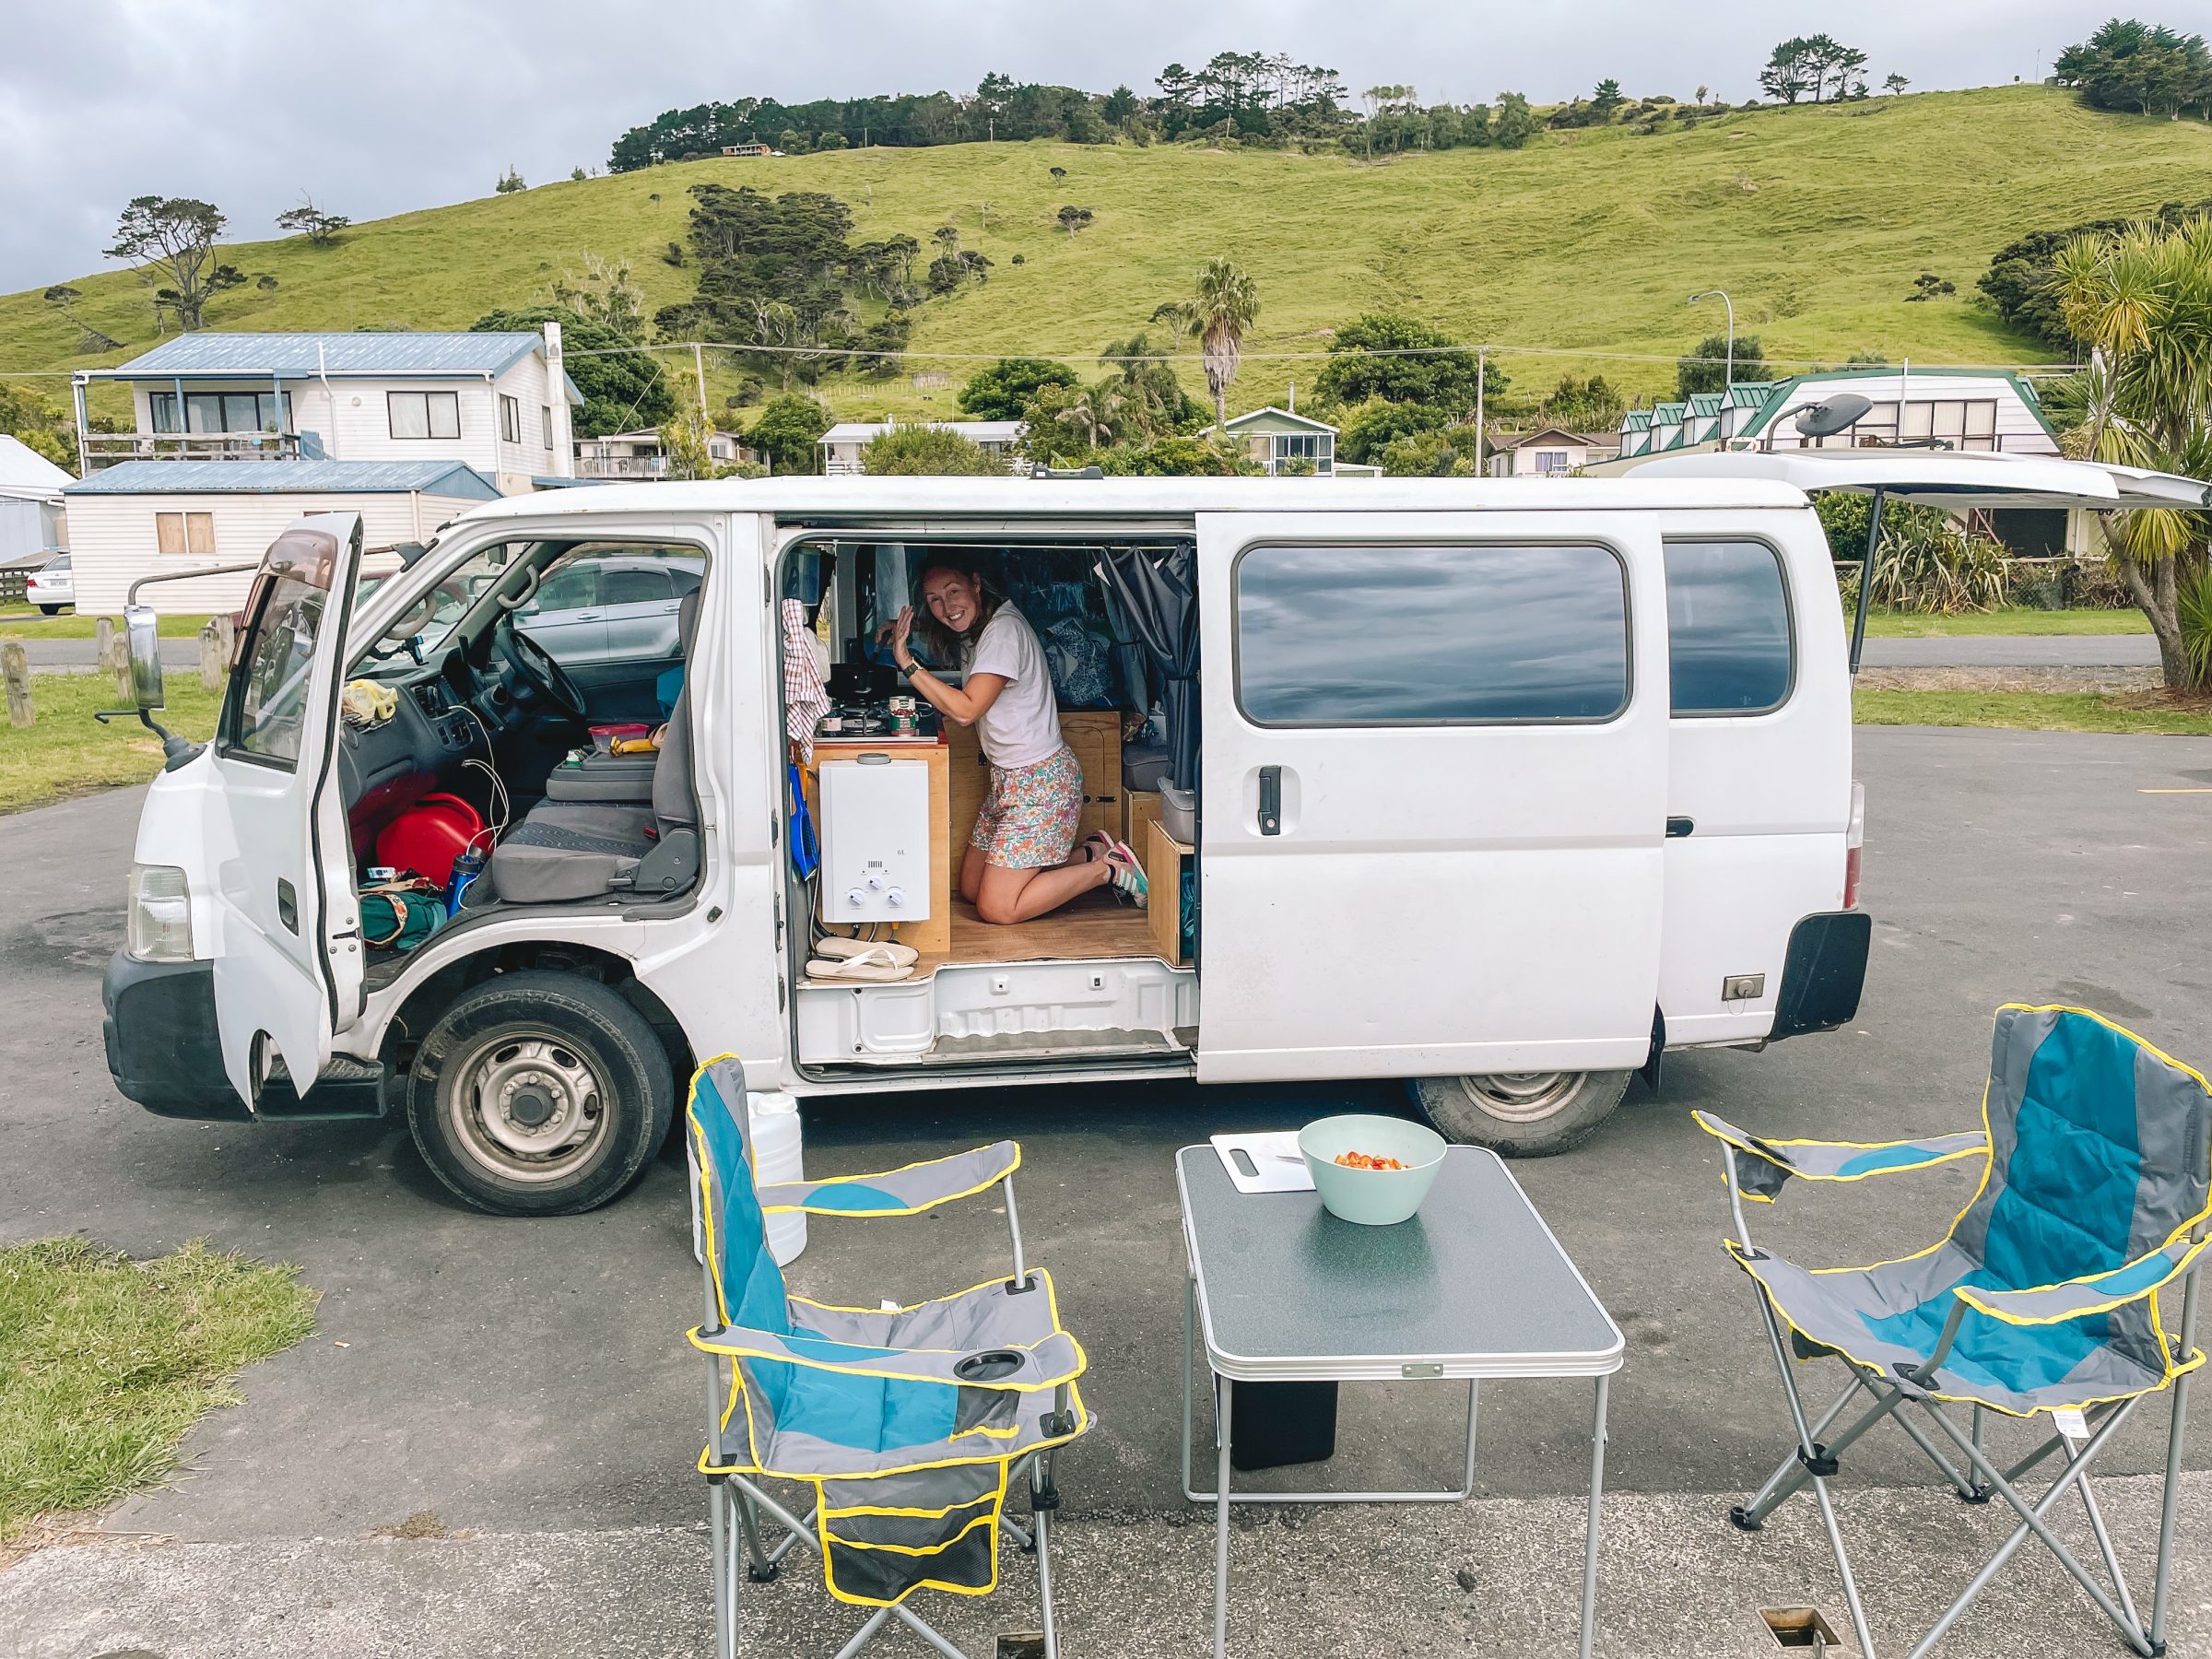 Życie na zewnątrz i gotowanie w dowolnym miejscu | Darmowe kempingi w Nowej Zelandii